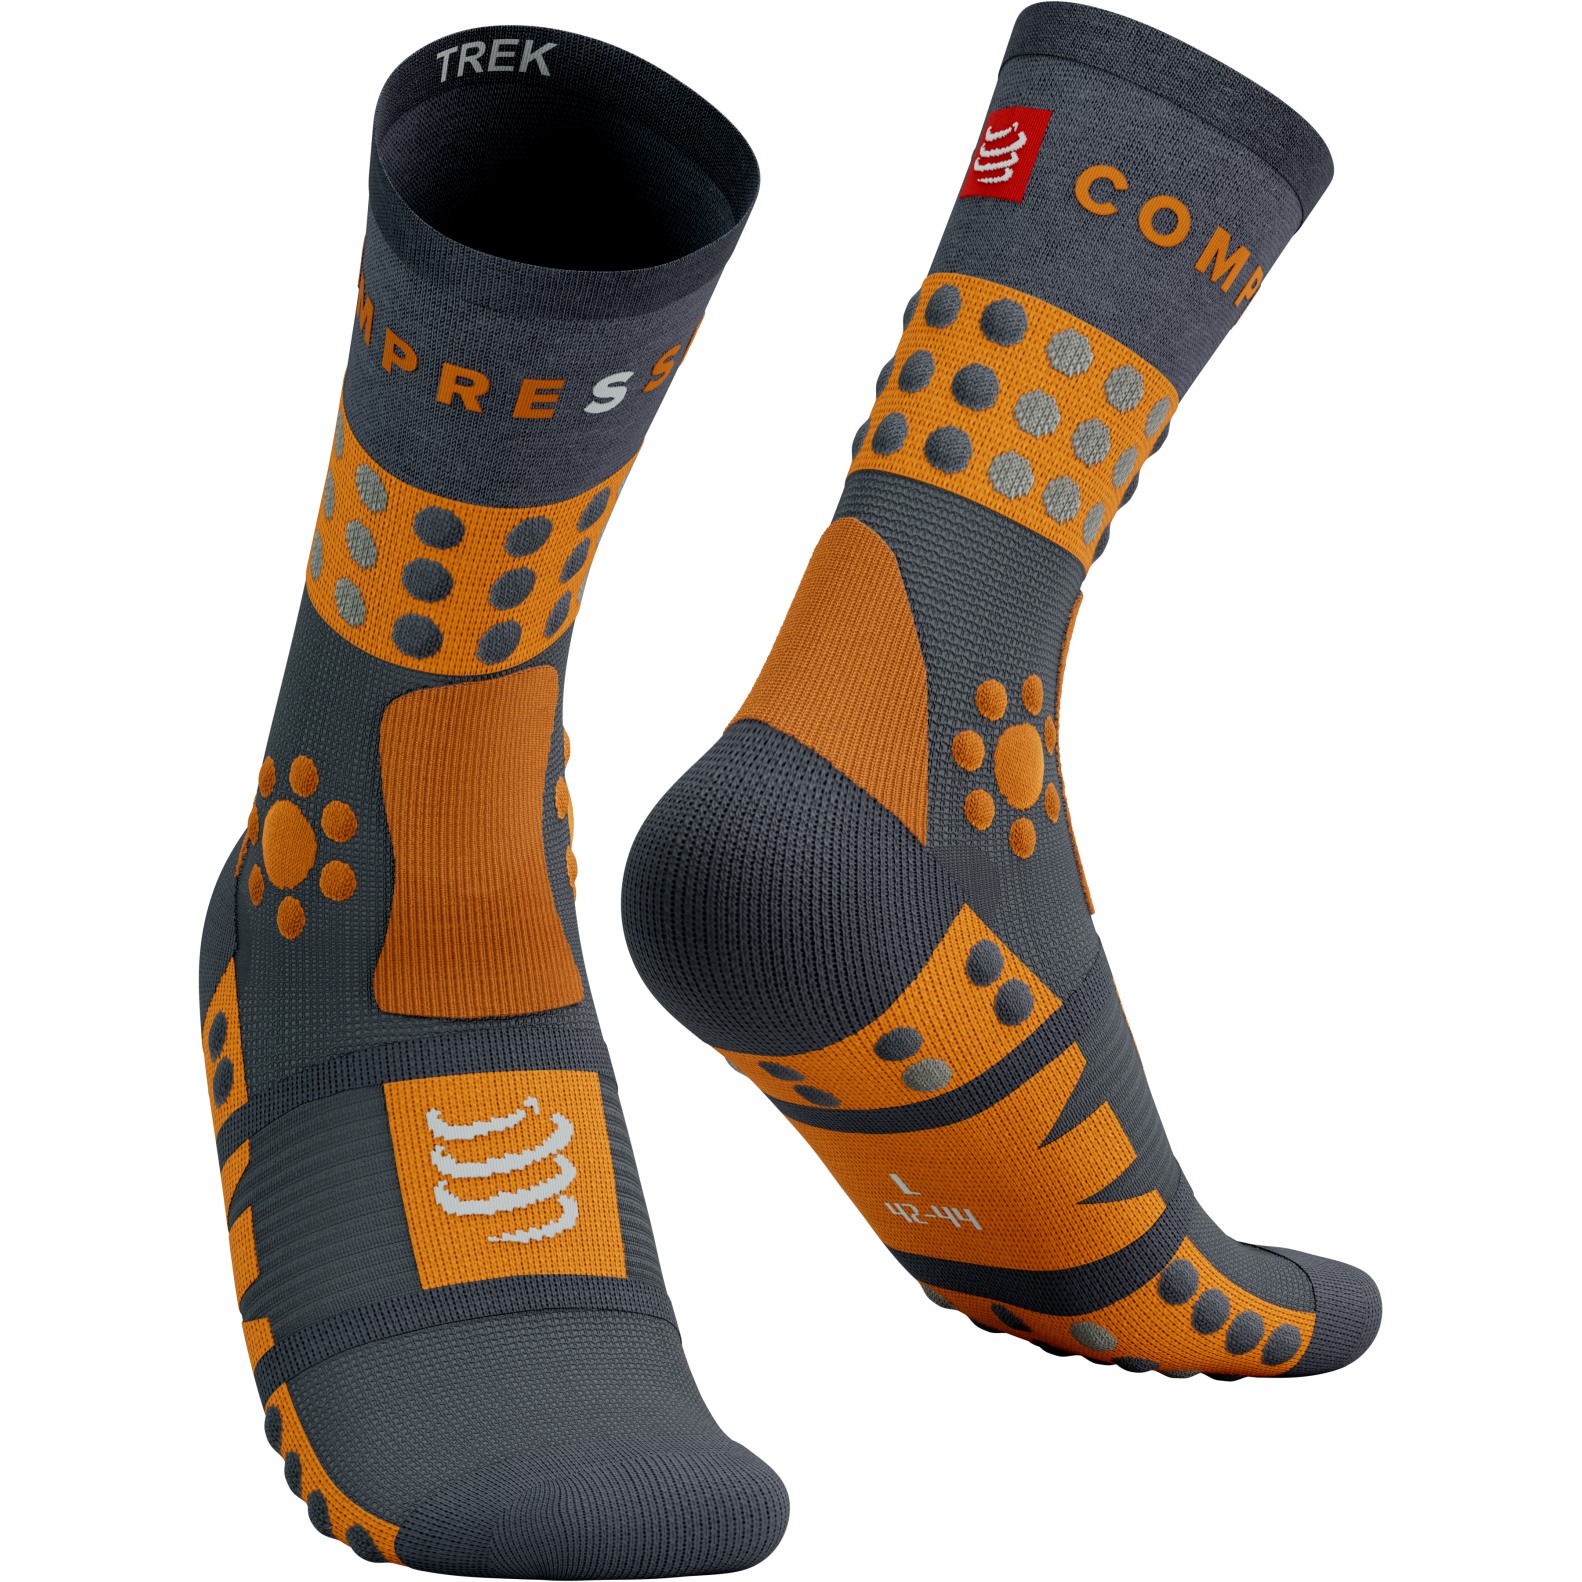 Produktbild von Compressport Trekking Socken - magnet/autumn glory